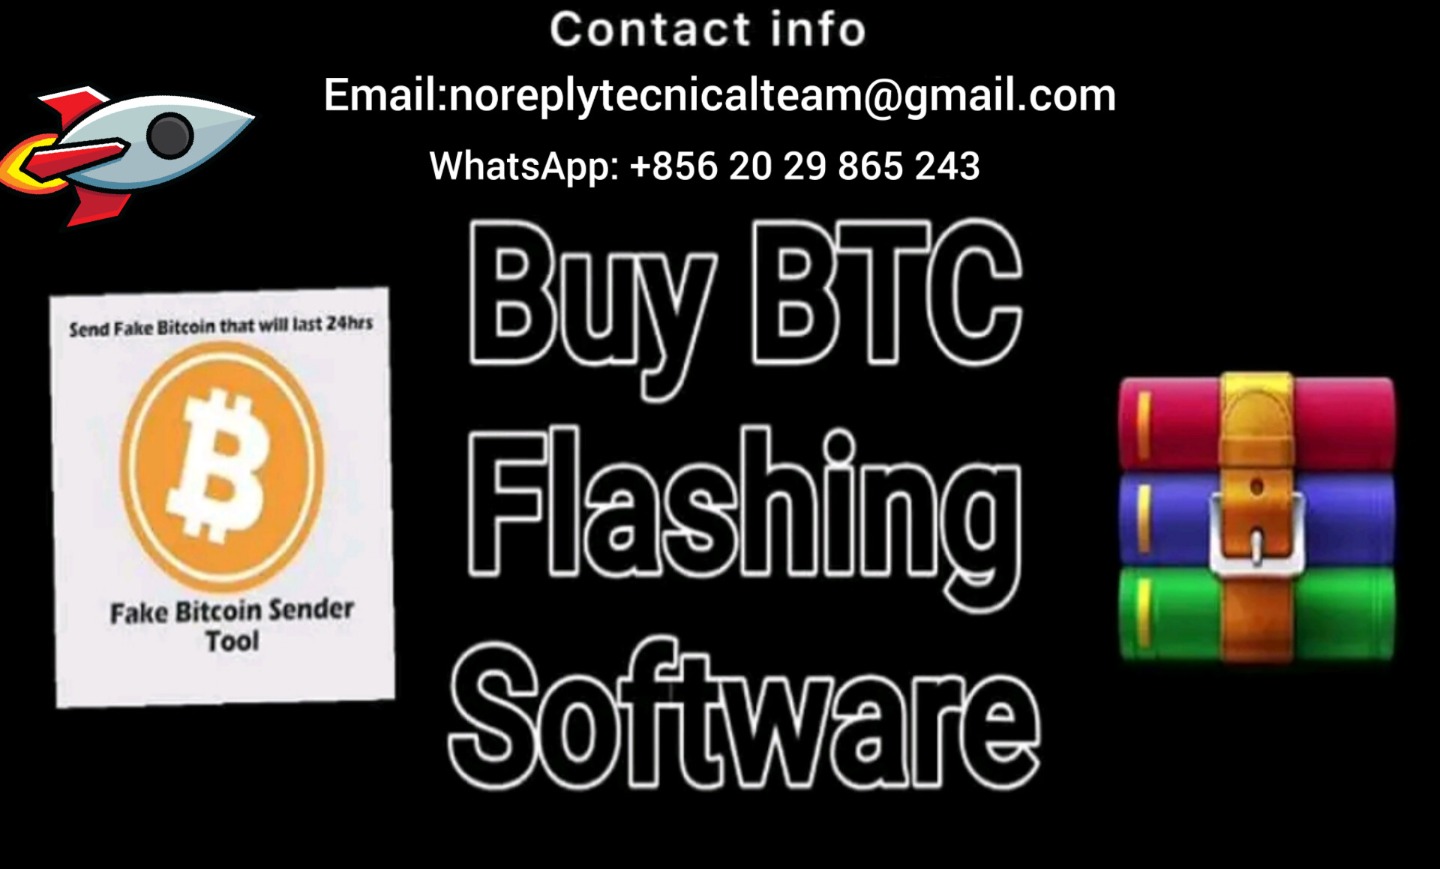 Bitcoin flasher software